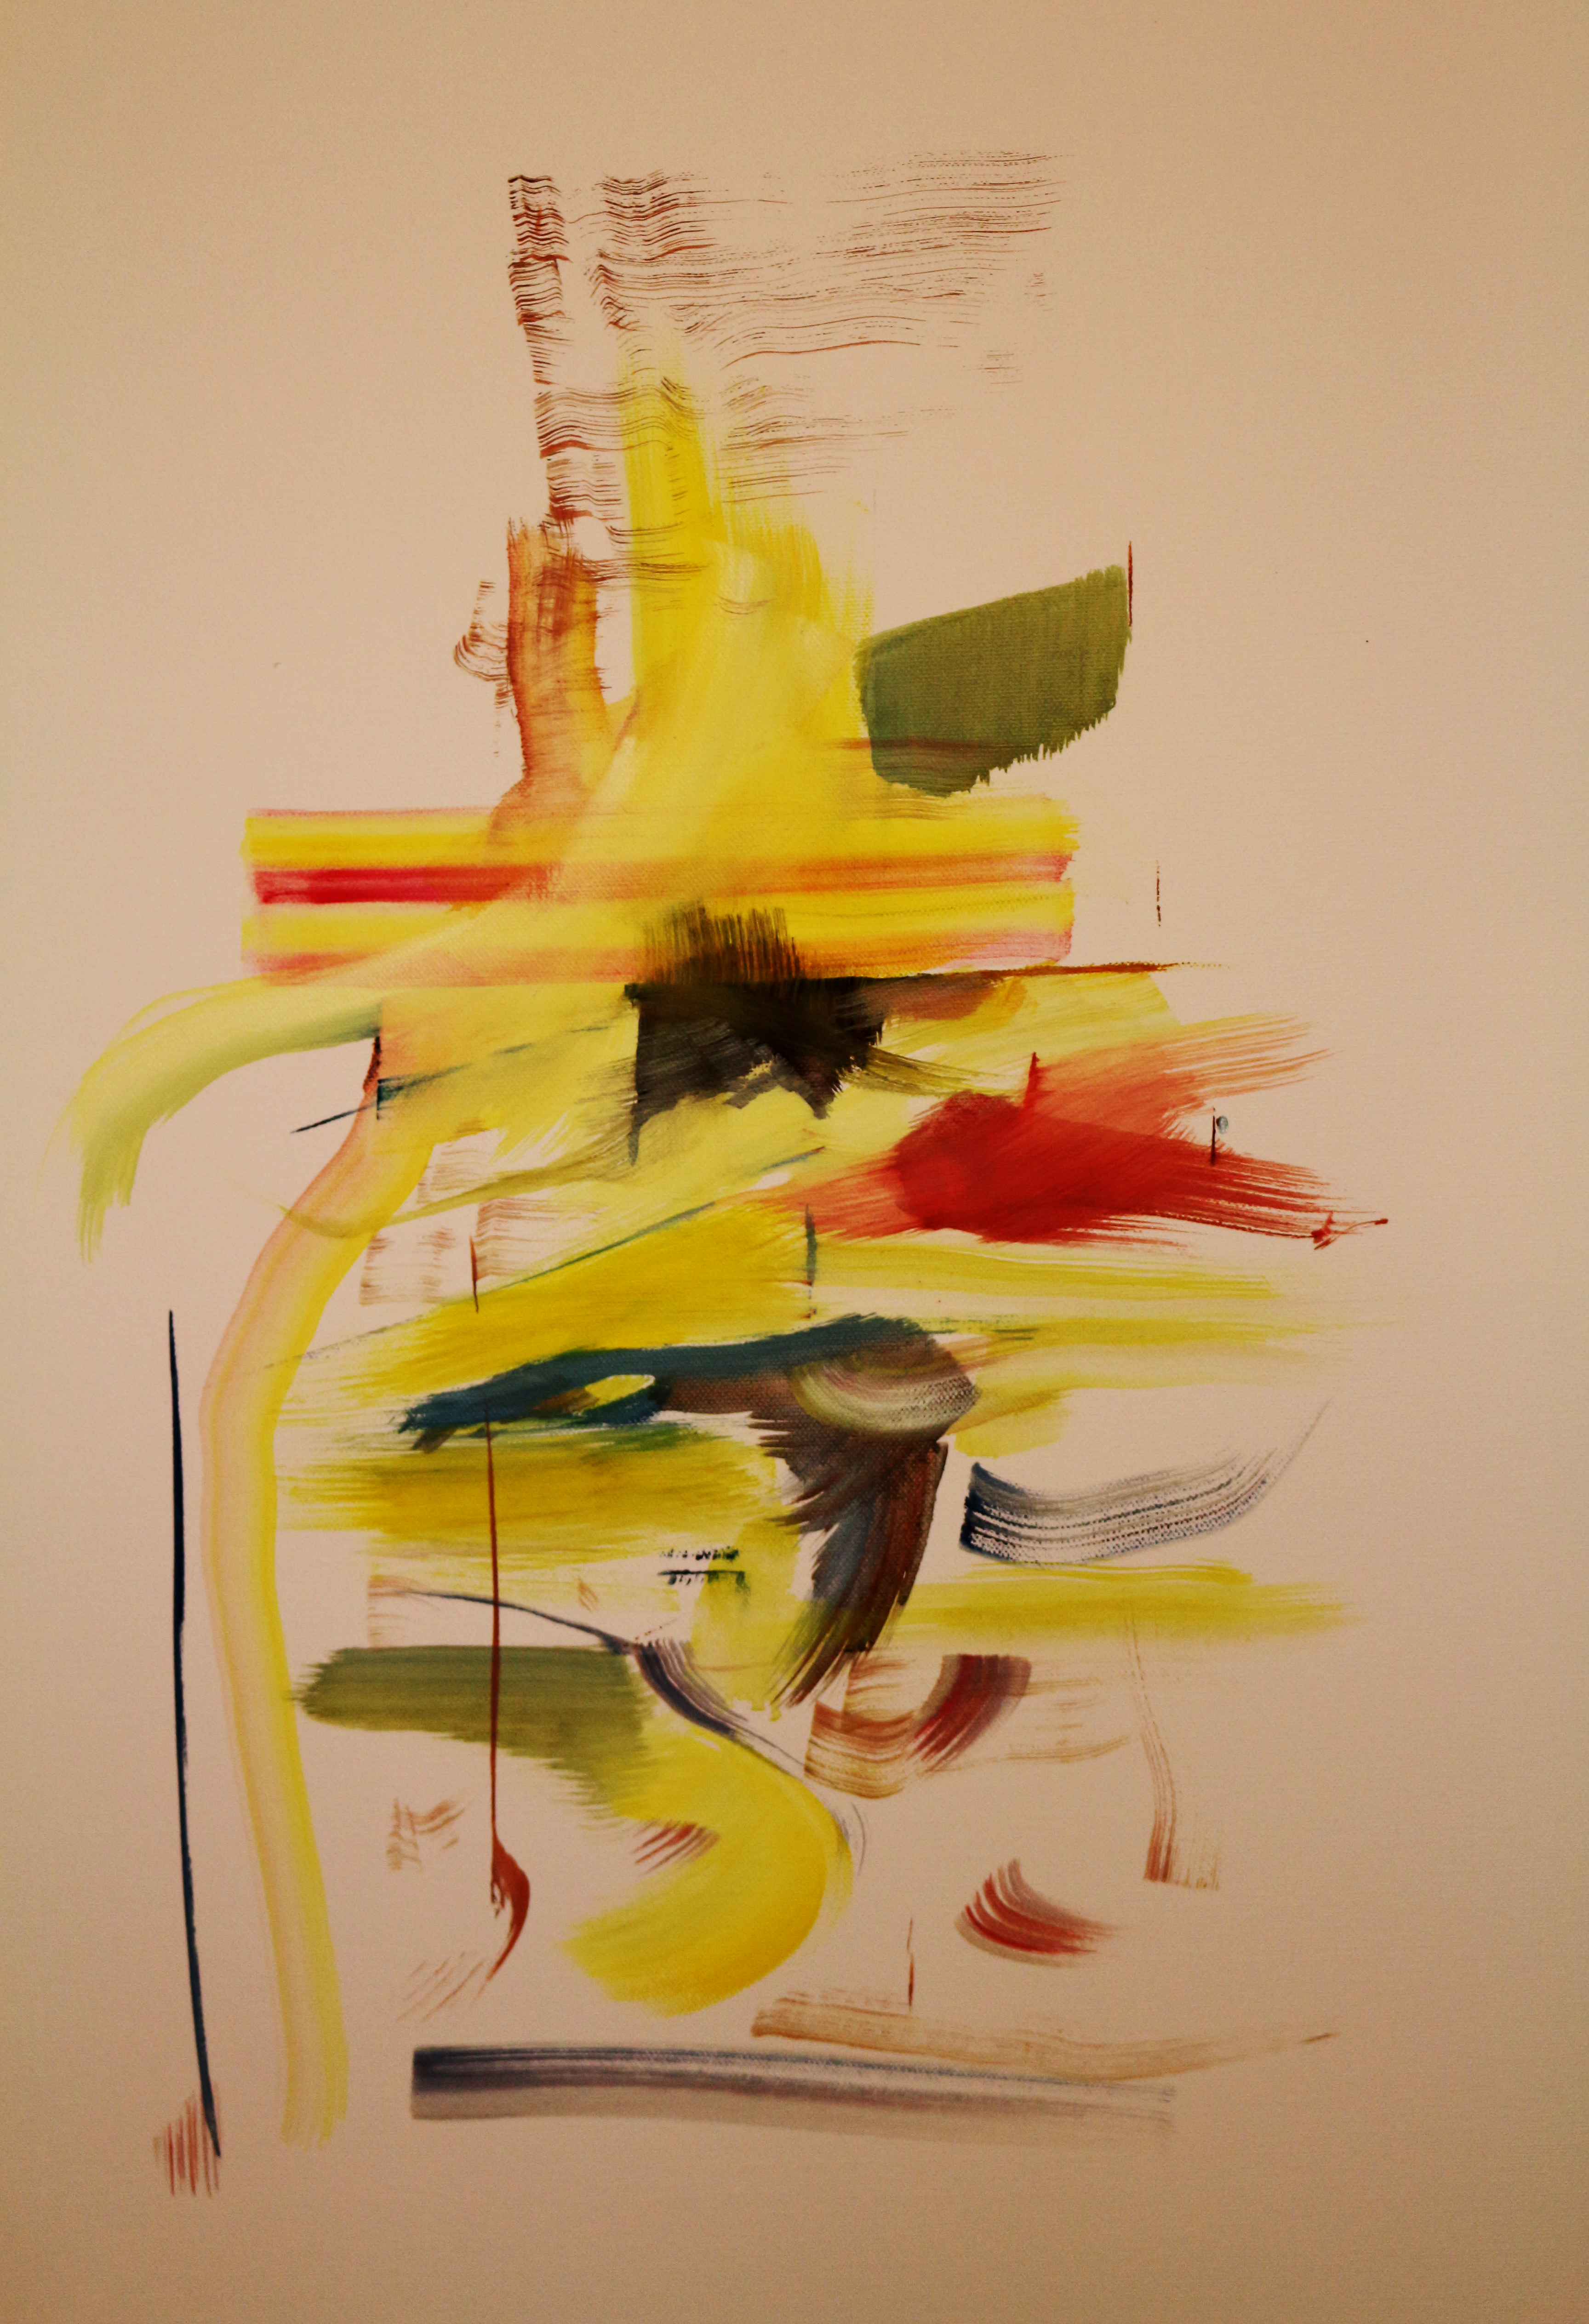 Žlutý, ikej na plátně, 70 x 50 cm, rok 2014